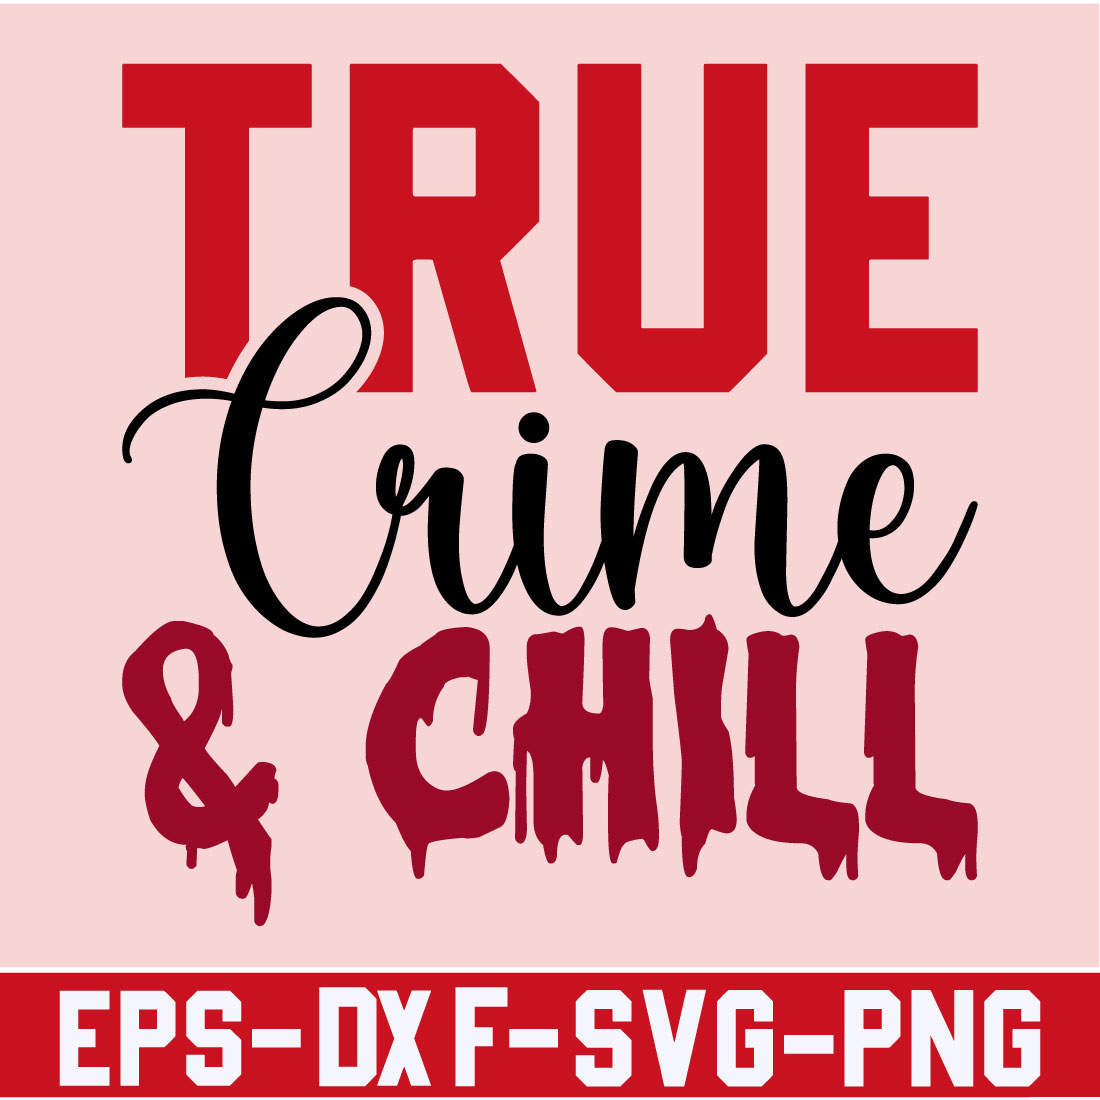 True Crime & Chill cover image.